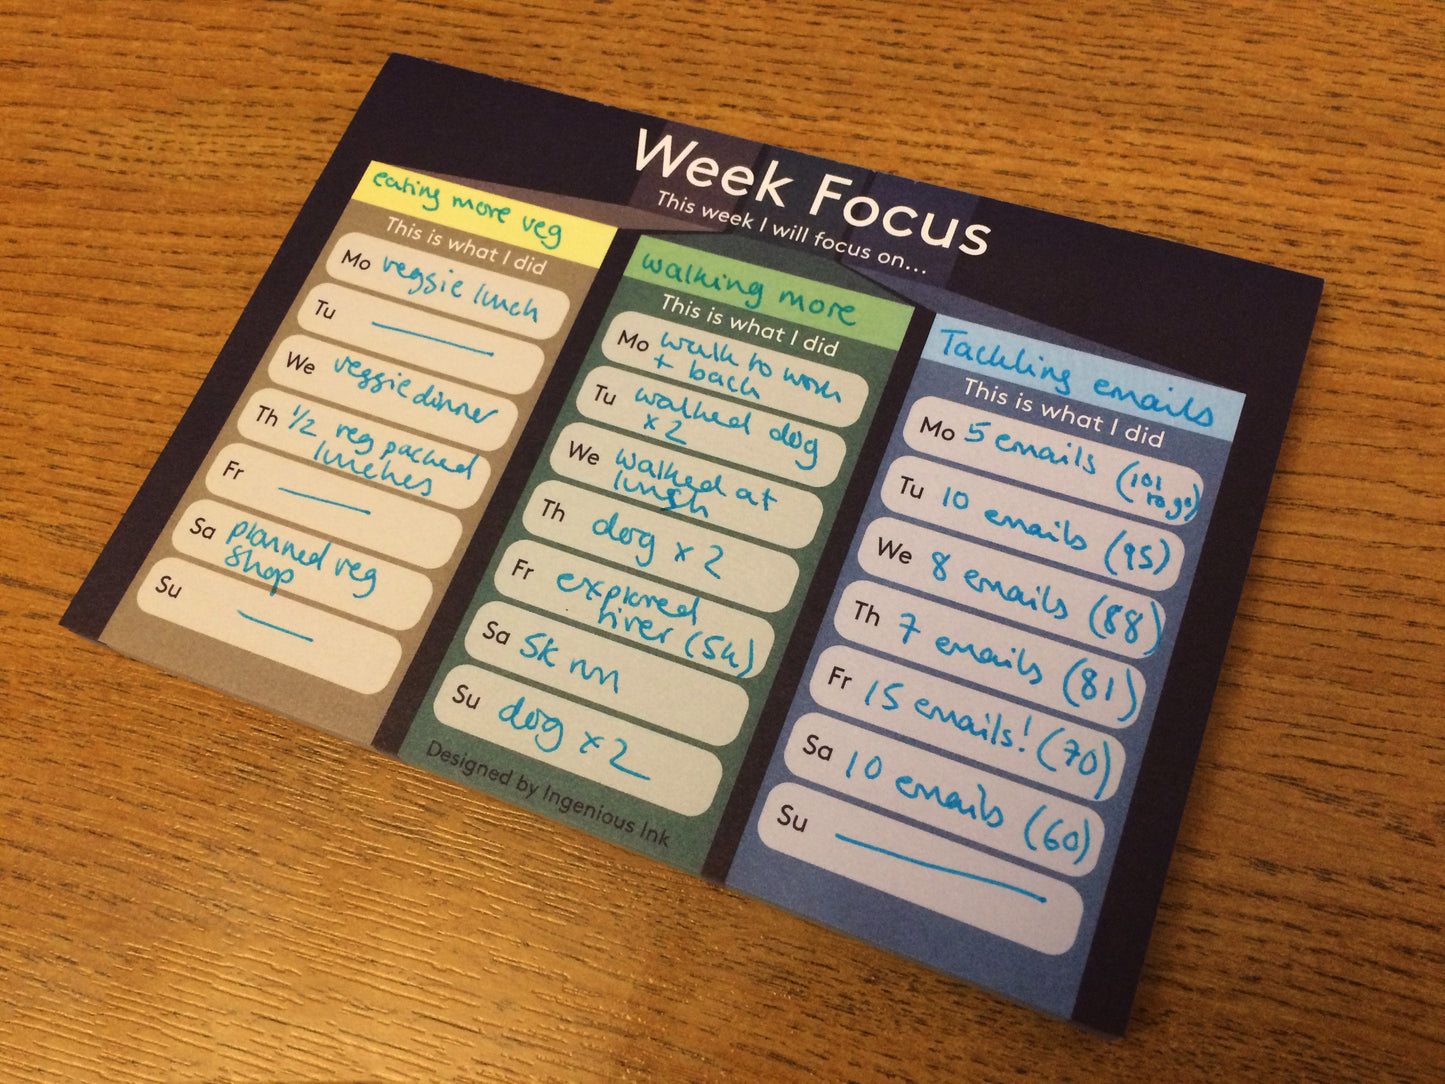 Week focus notepad